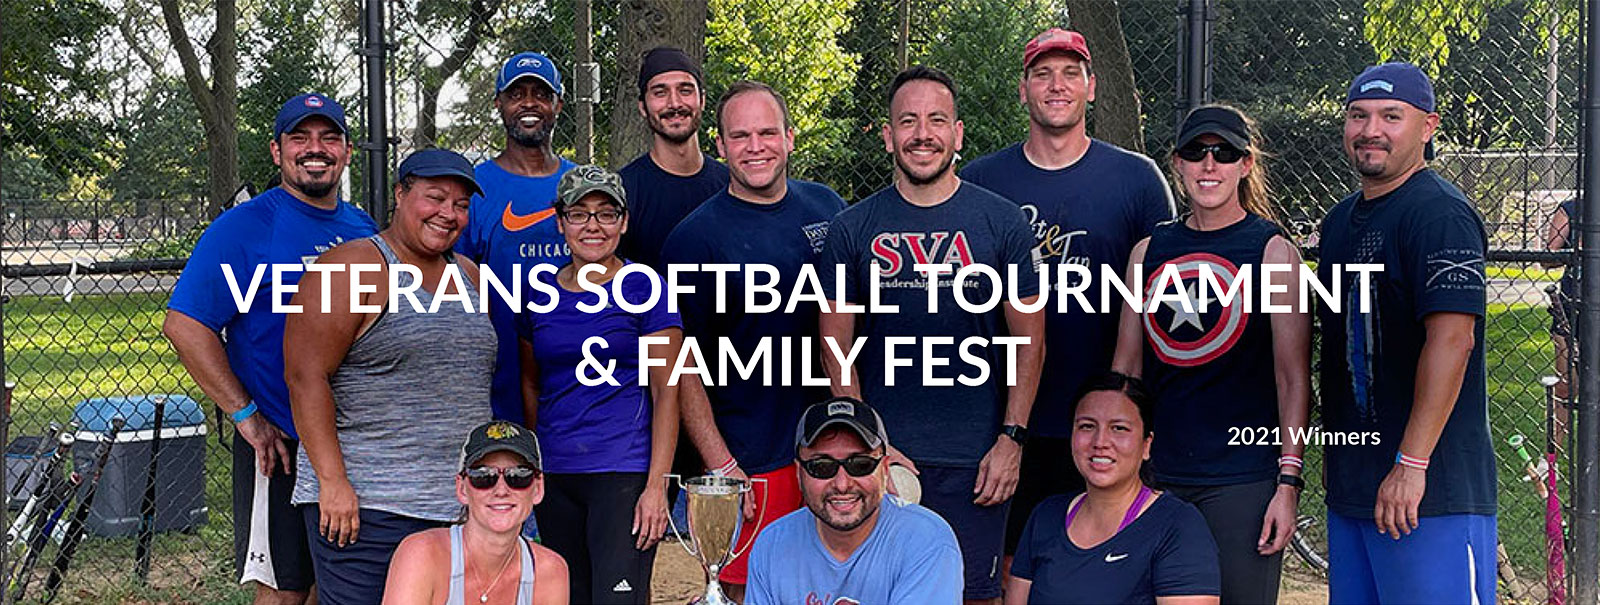 Veterans Softball Tournament & Family Fest